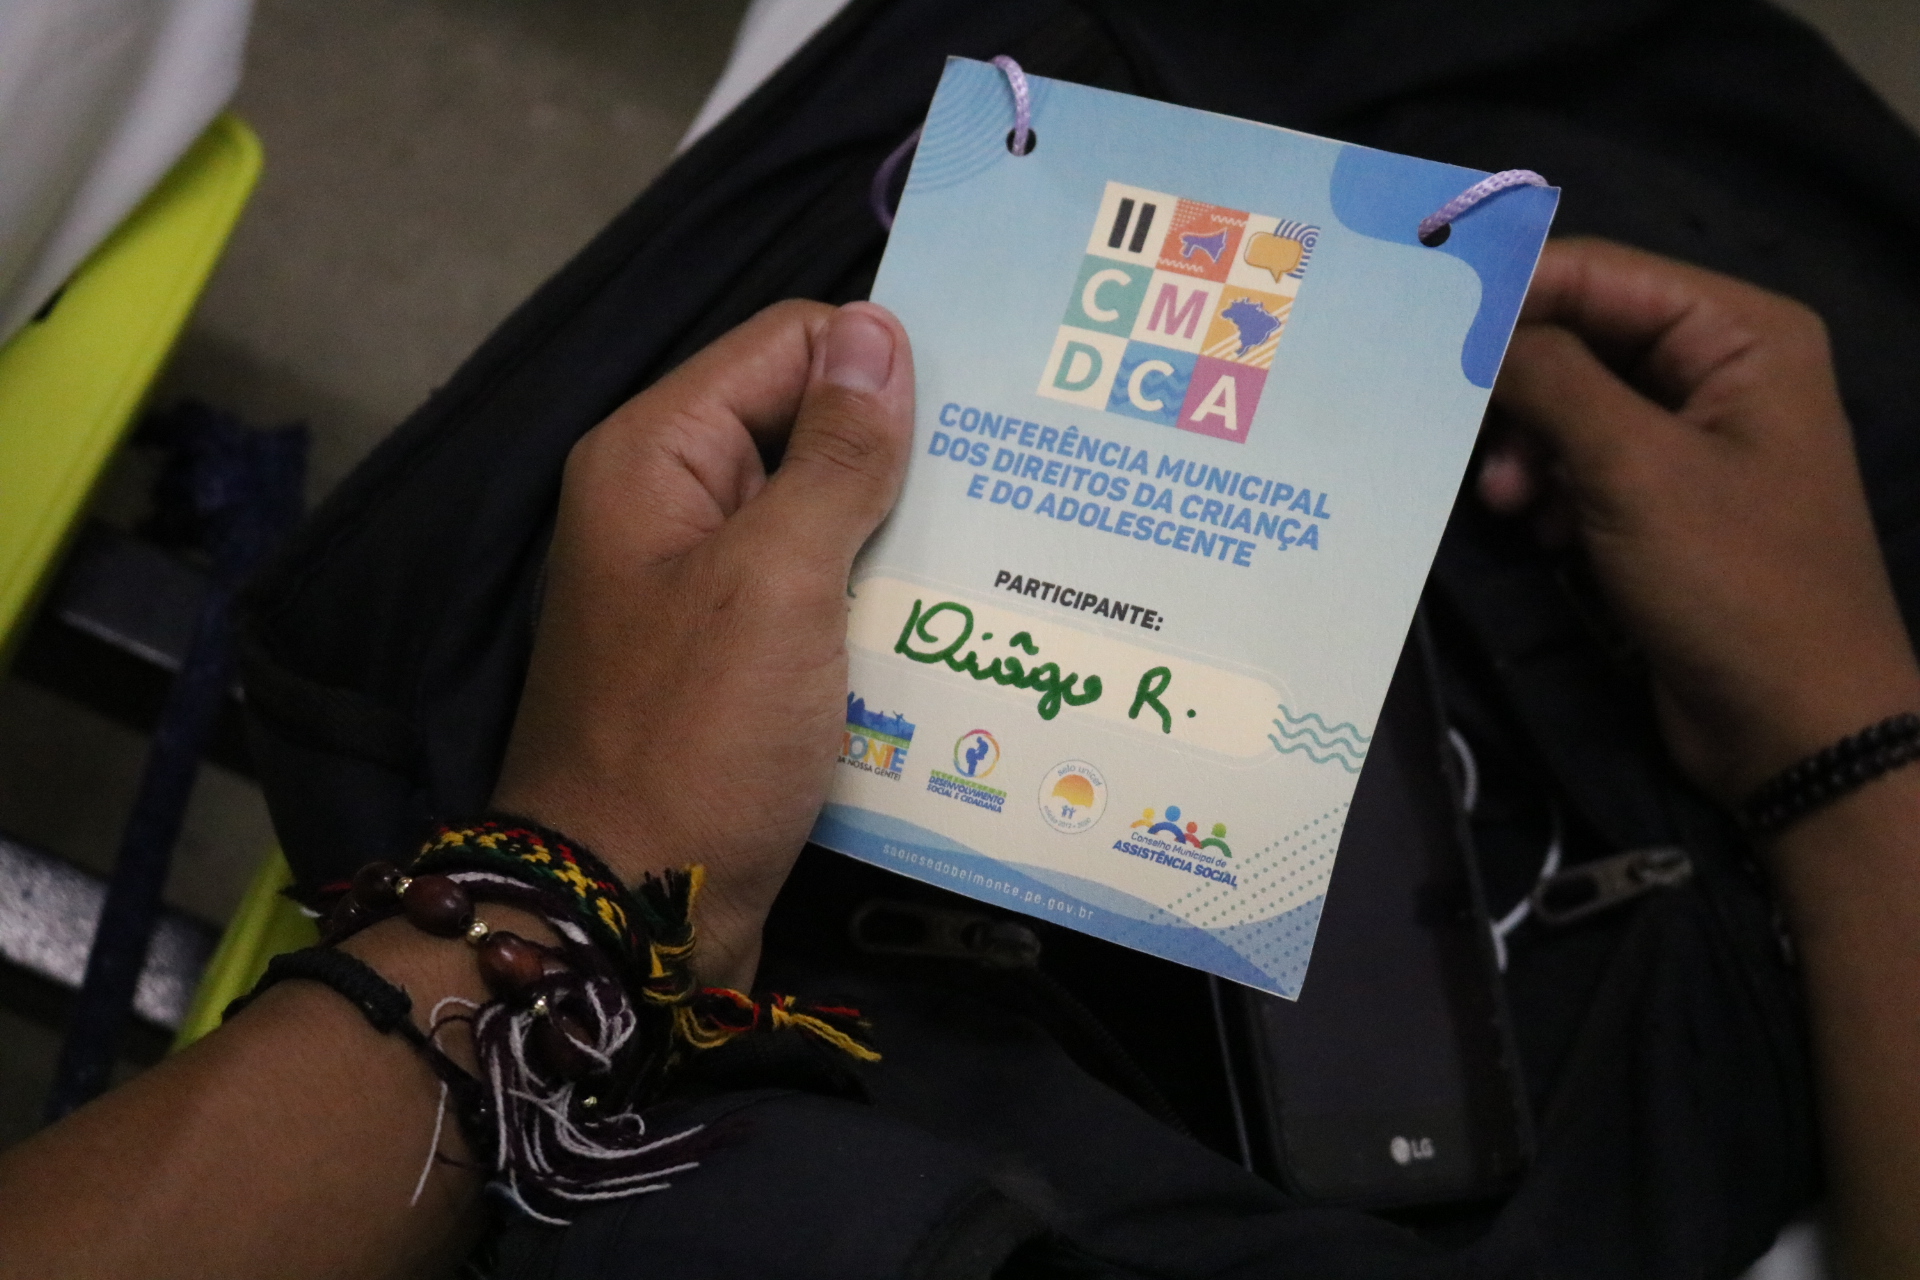 Conferência Municipal dos Direitos da Criança e do Adolescente foi realizada em São José do Belmonte